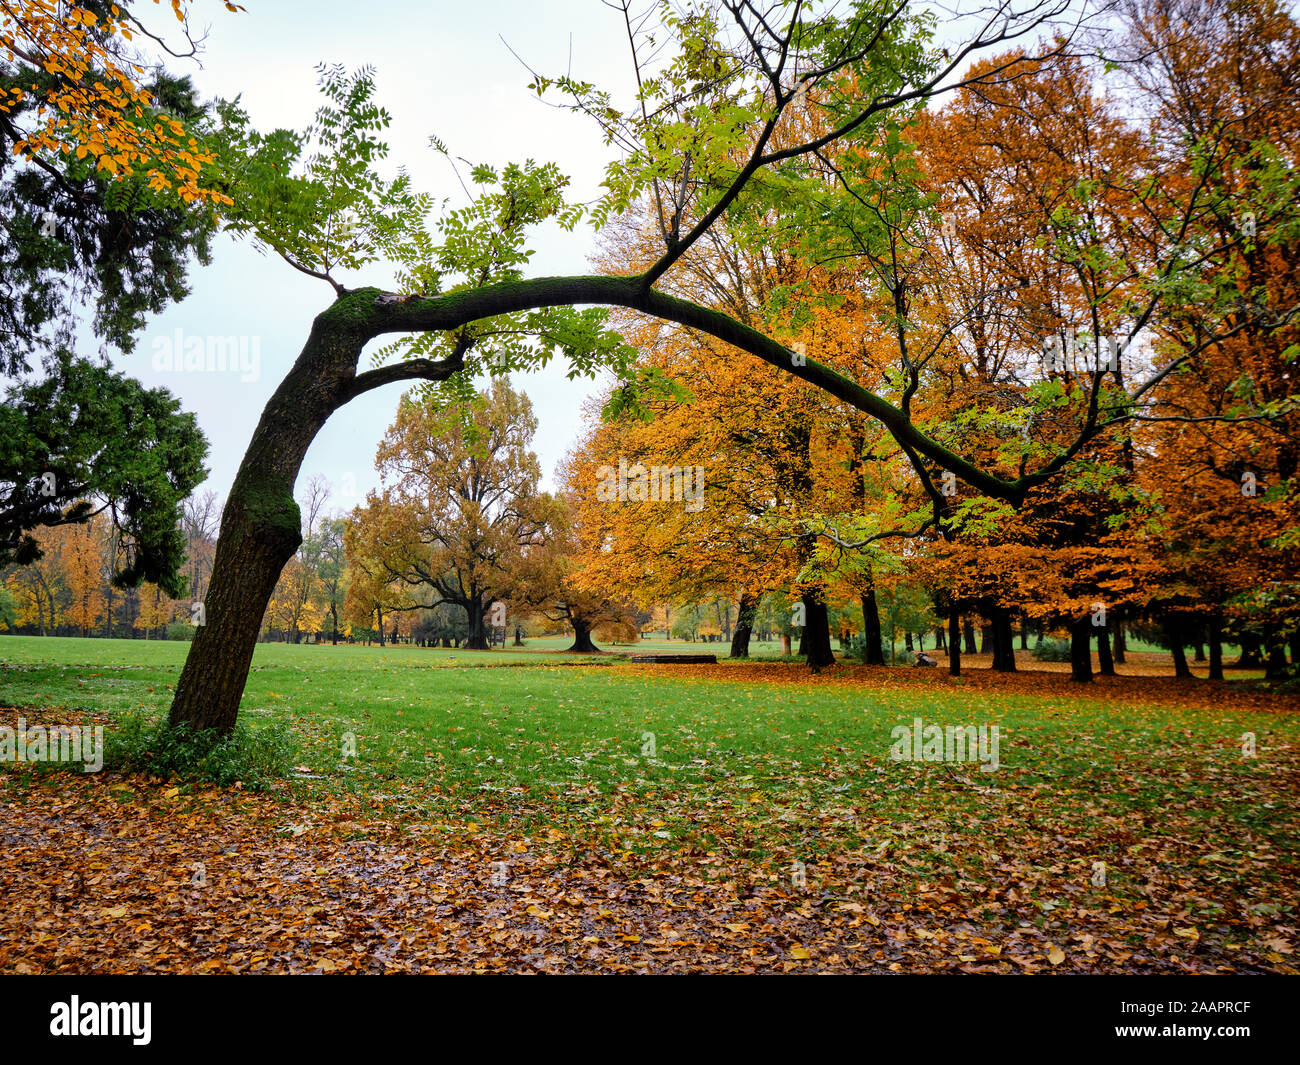 Malerische großen gekrümmten Baum - Herbst in Monza, Italien Stockfoto